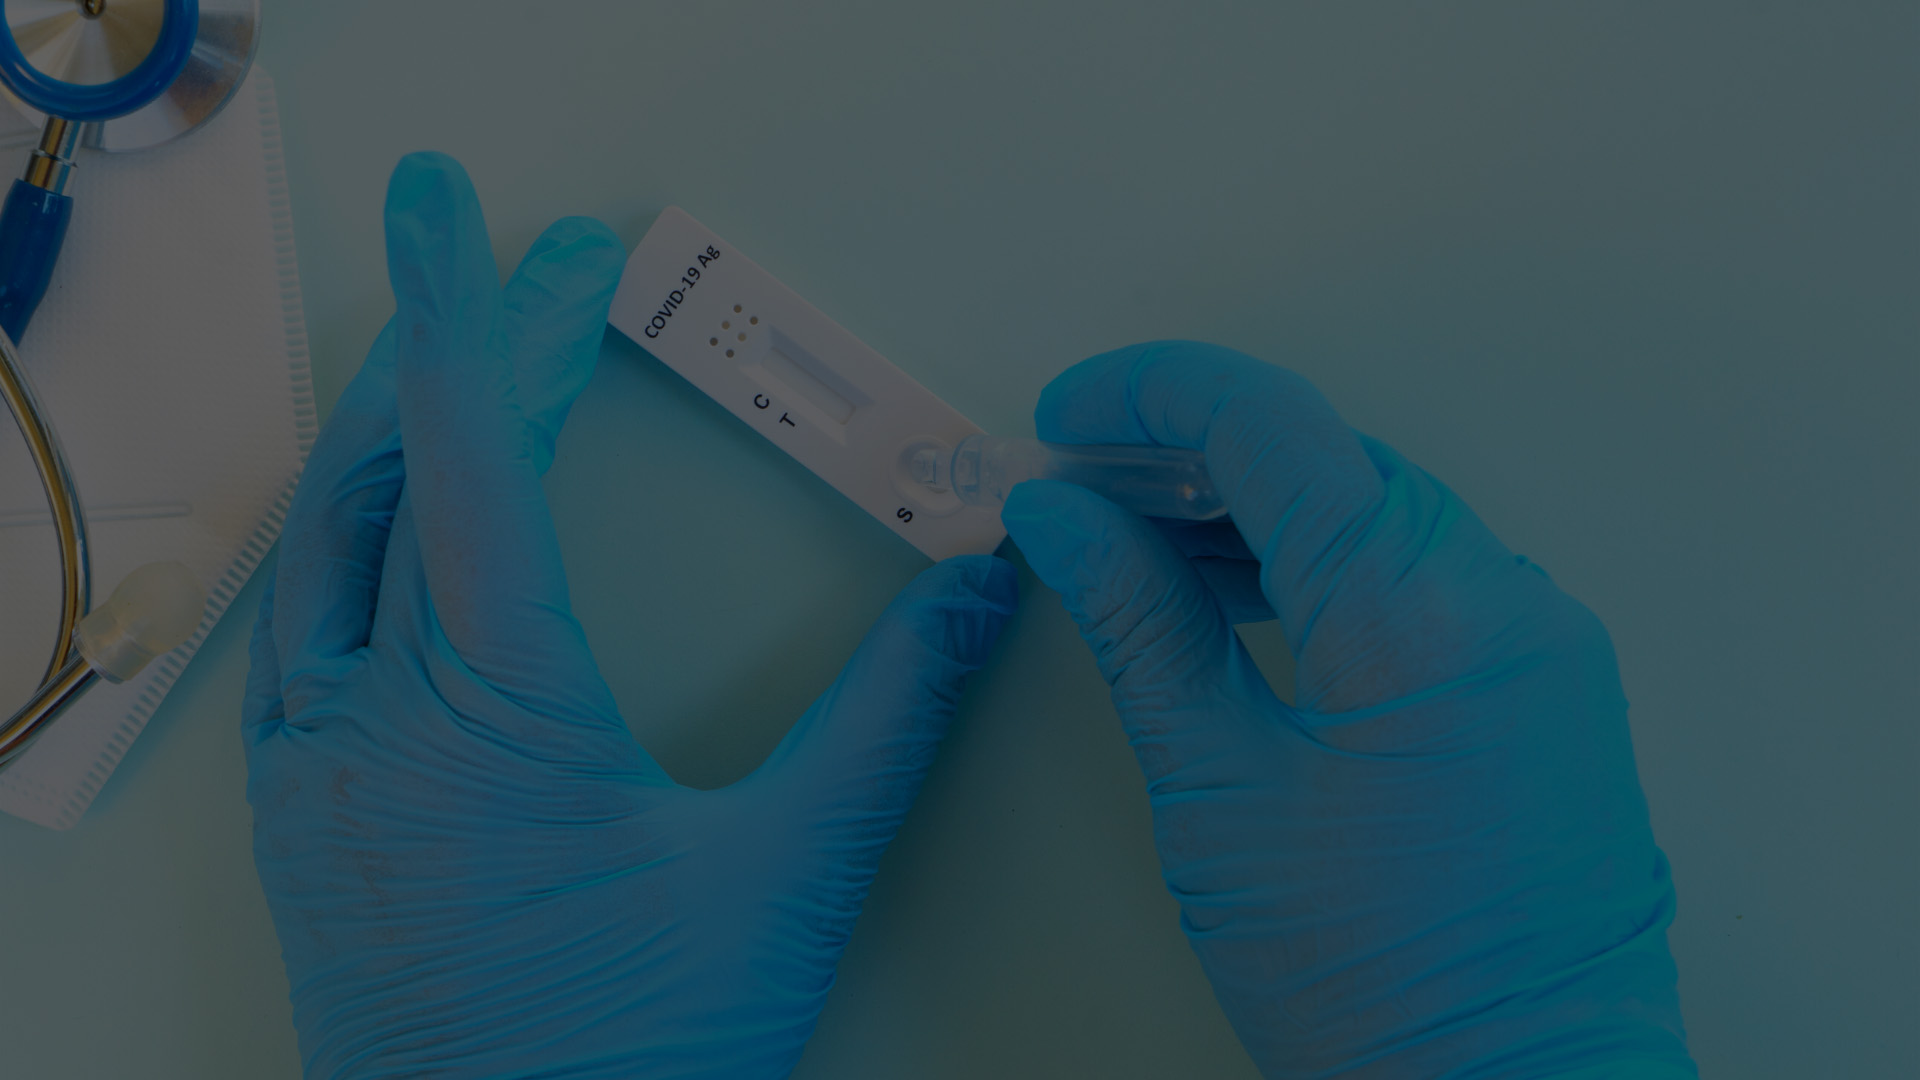 Fotografie a unor maini cu manusi chirurgicale ce manipuleaza un test rapid antigen de depistare al virusului SARS-CoV-2